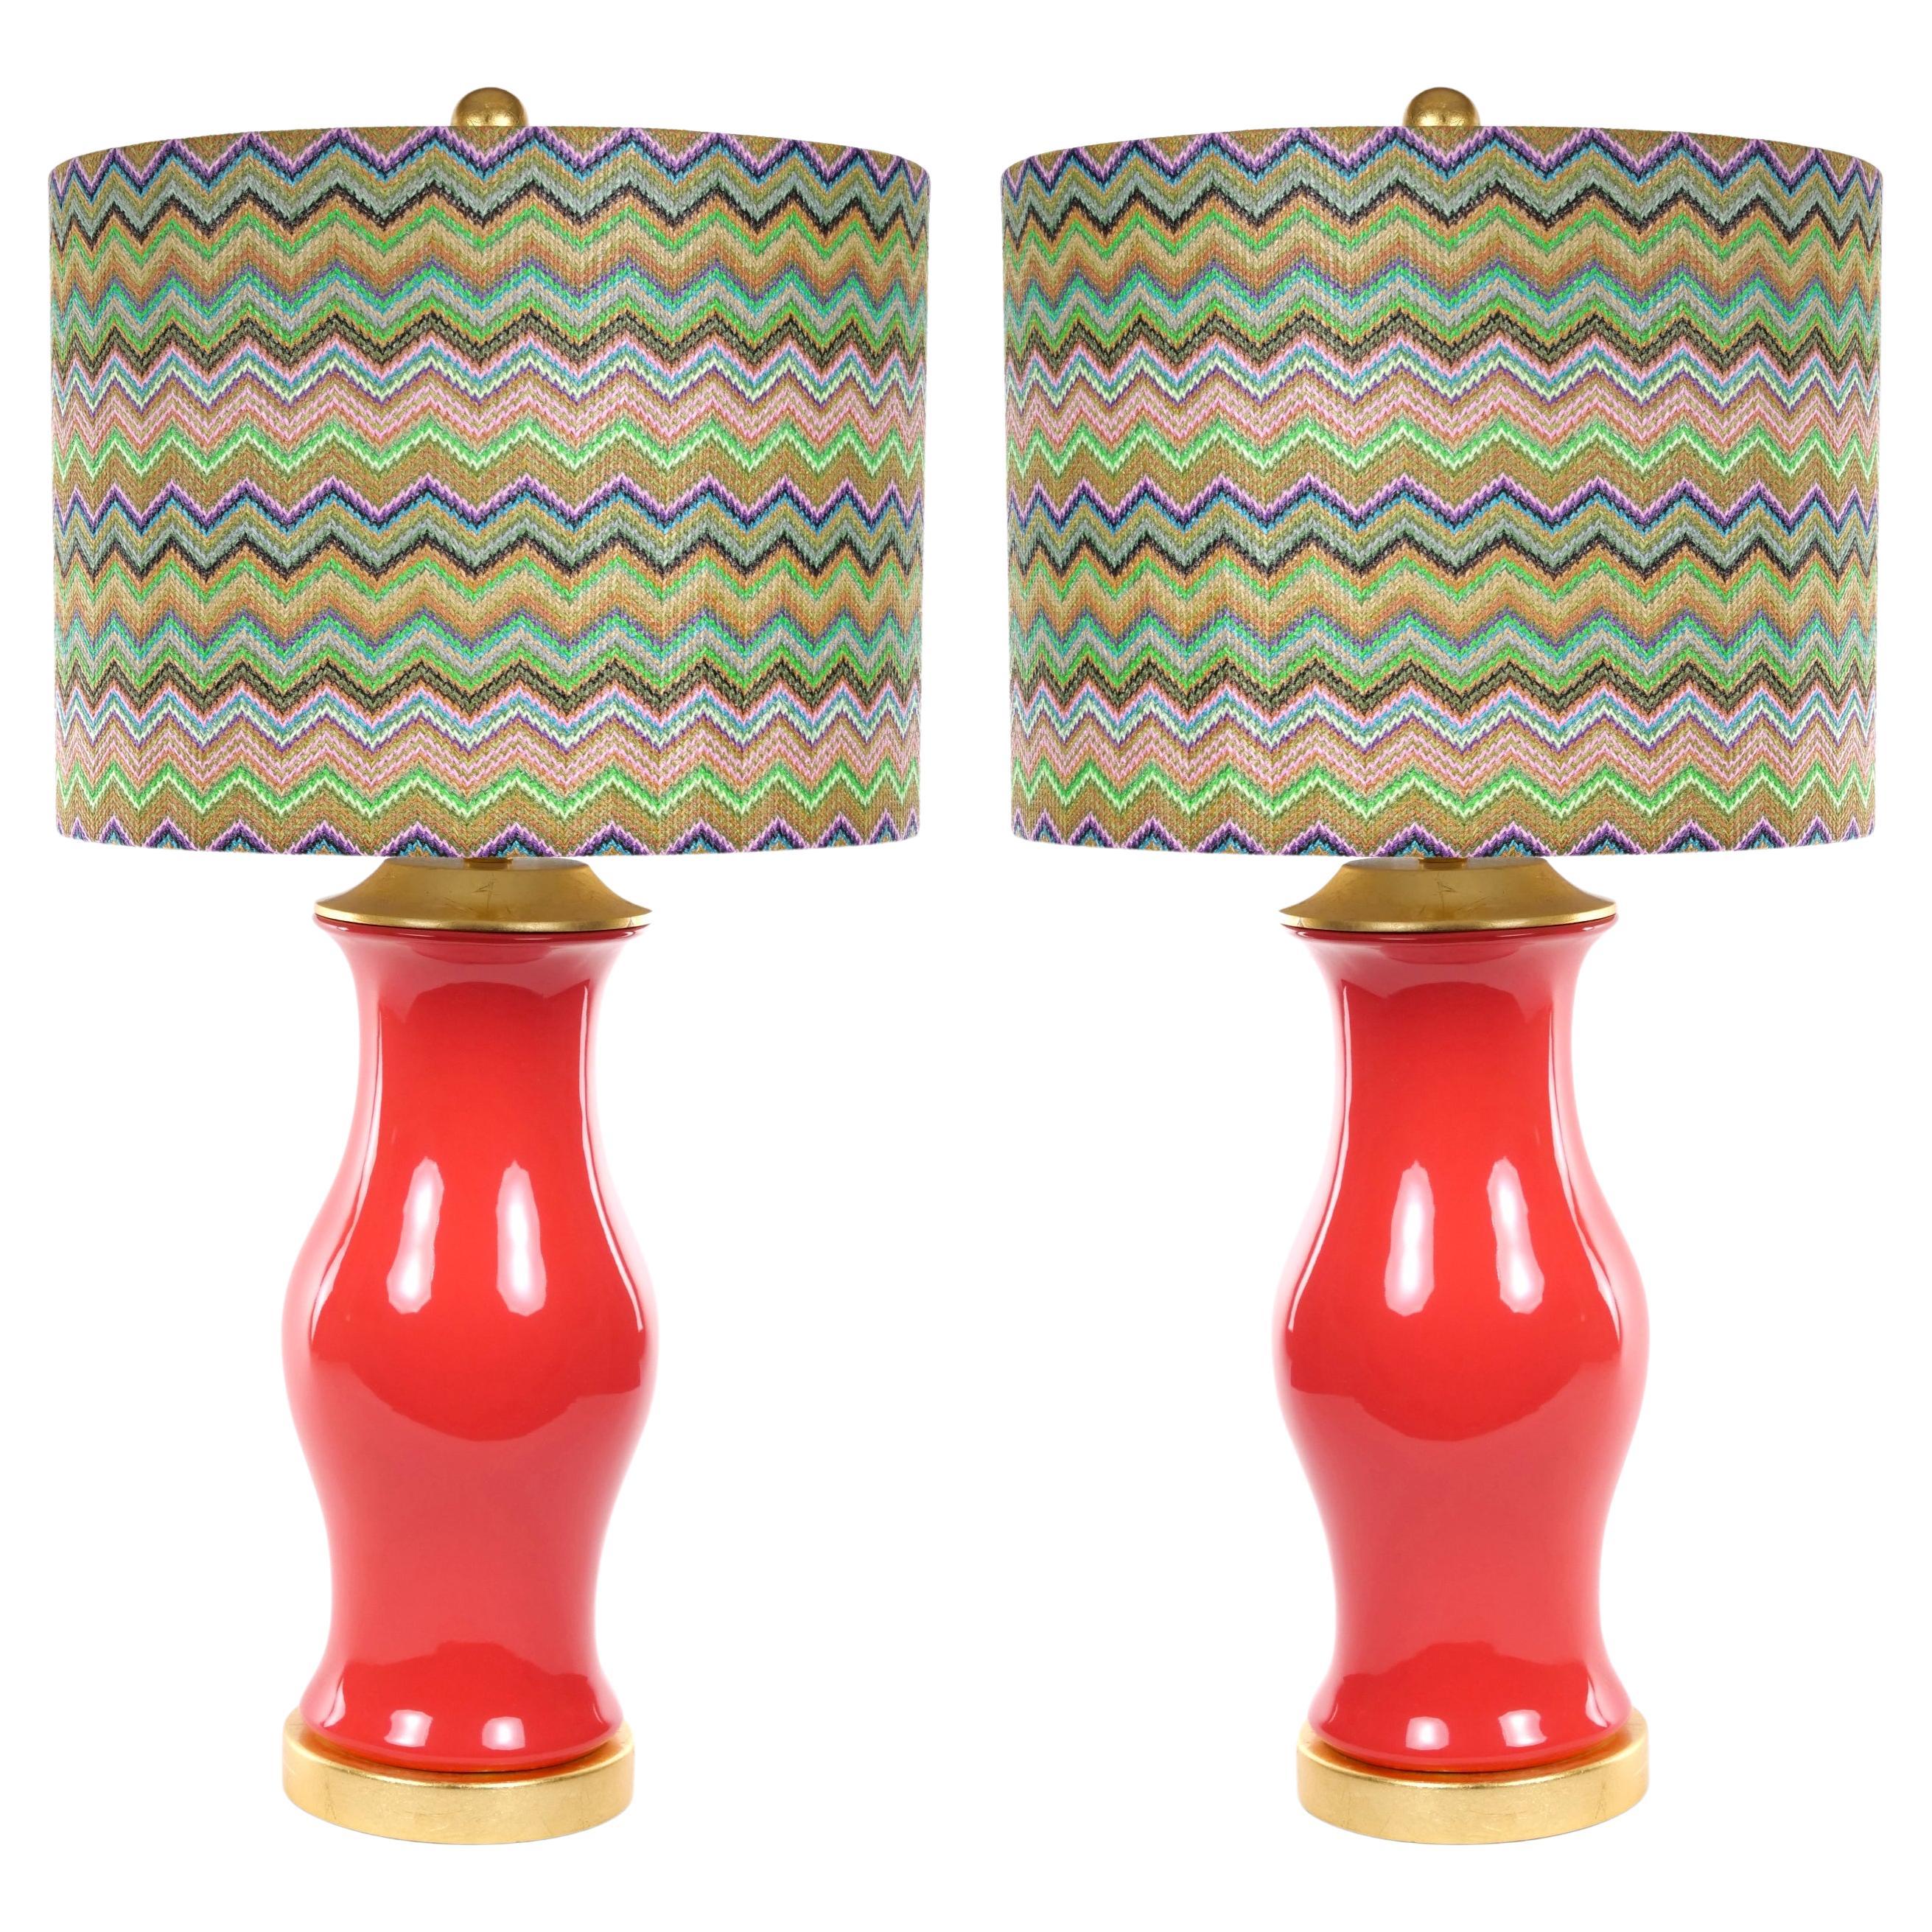 Paar lachs glasierte Porzellan-Tischlampen/Lampen mit vergoldeten Holzsockeln